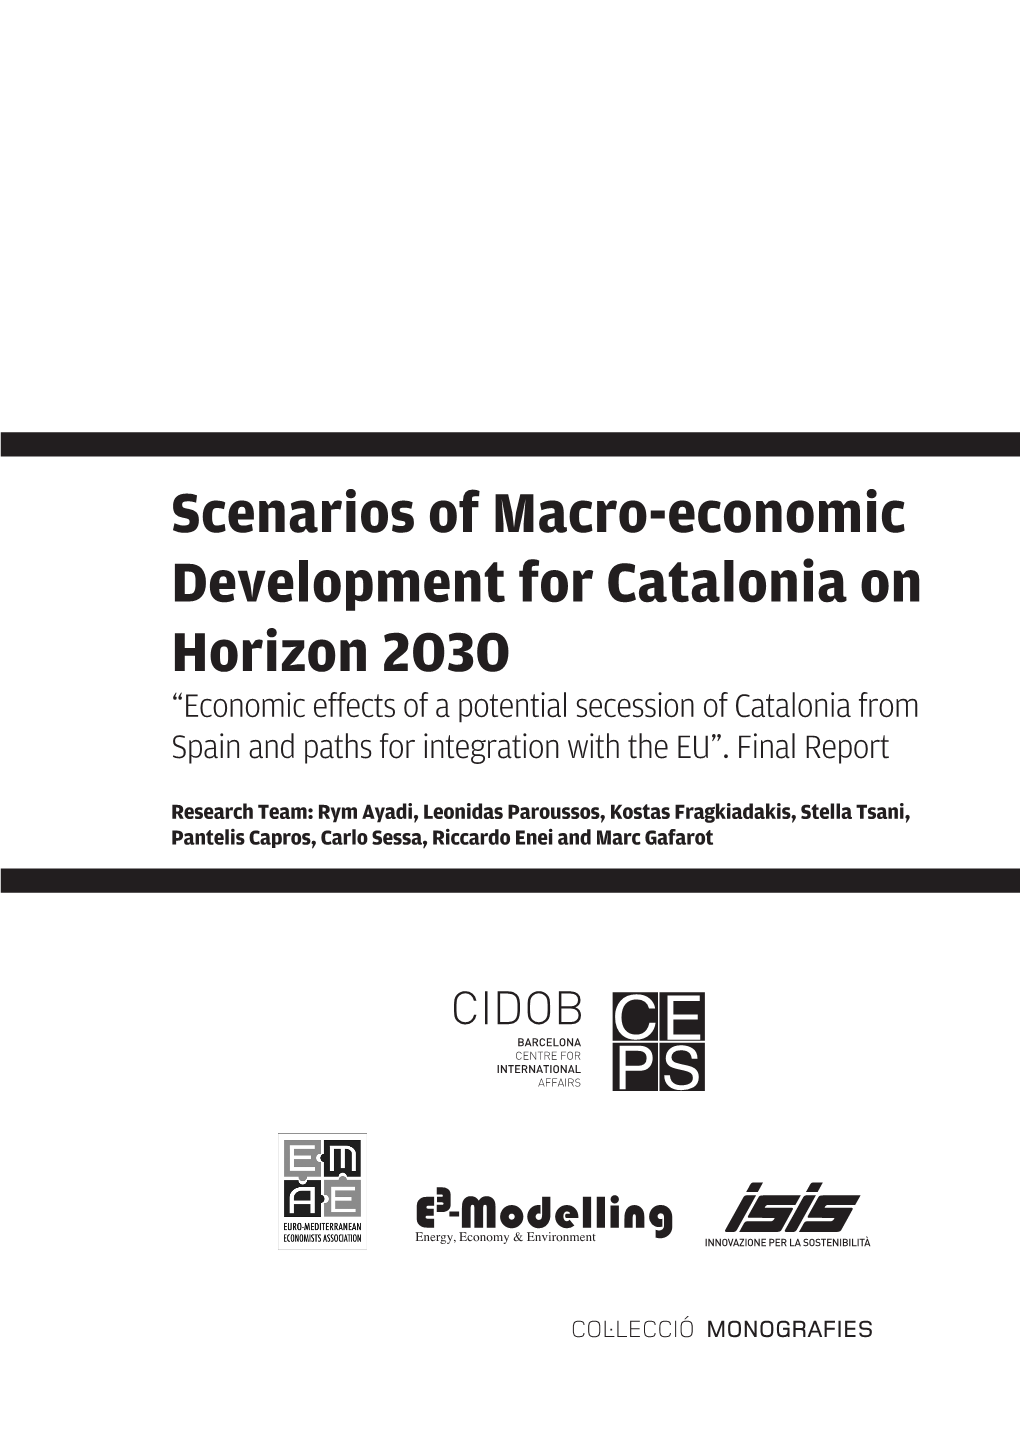 Scenarios of Macro-Economic Development for Catalonia on Horizon 2030